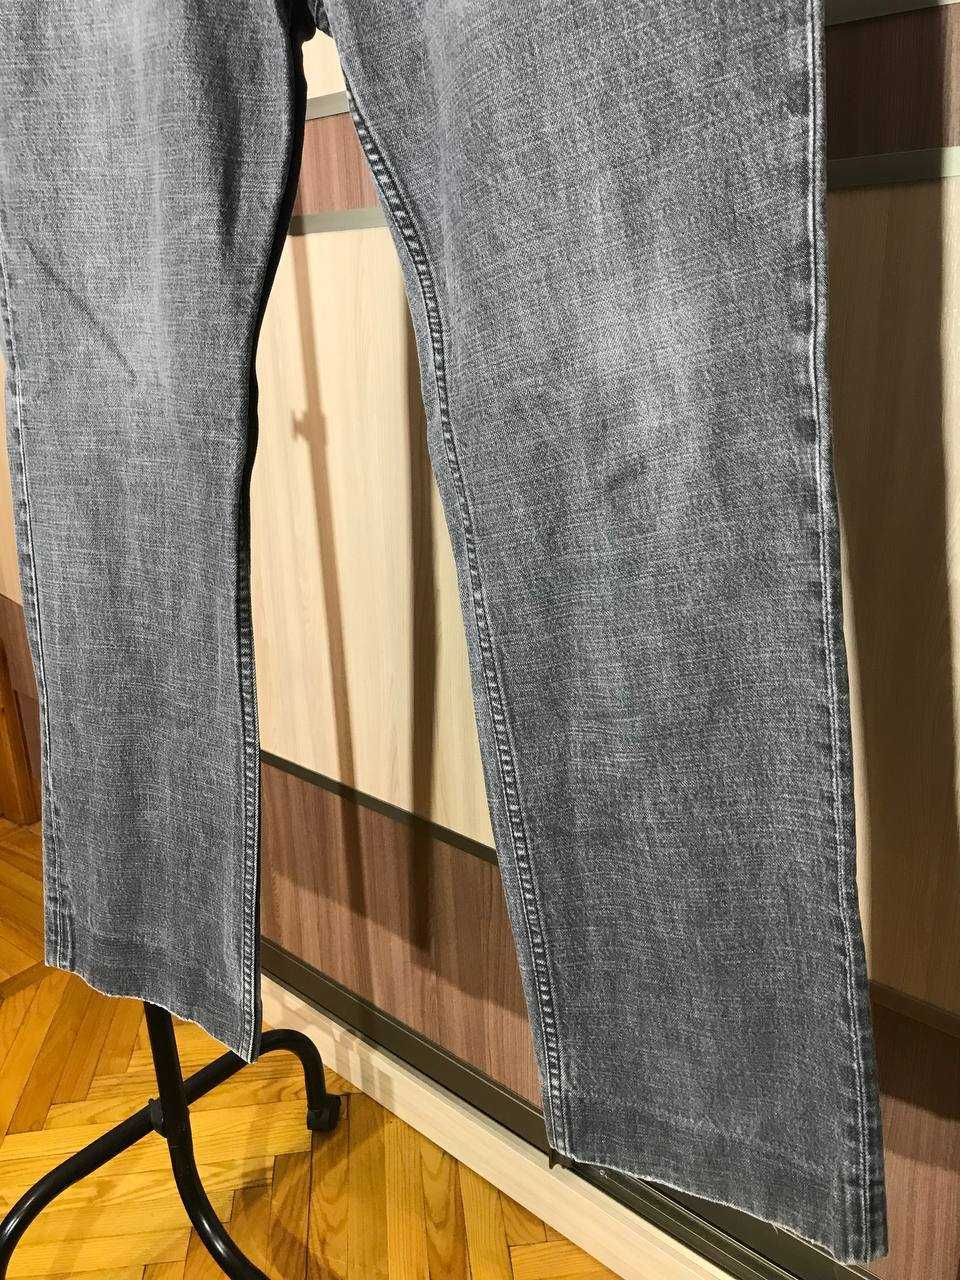 Мужские джинсы штаны Prada Vintage Size 35 оригинал